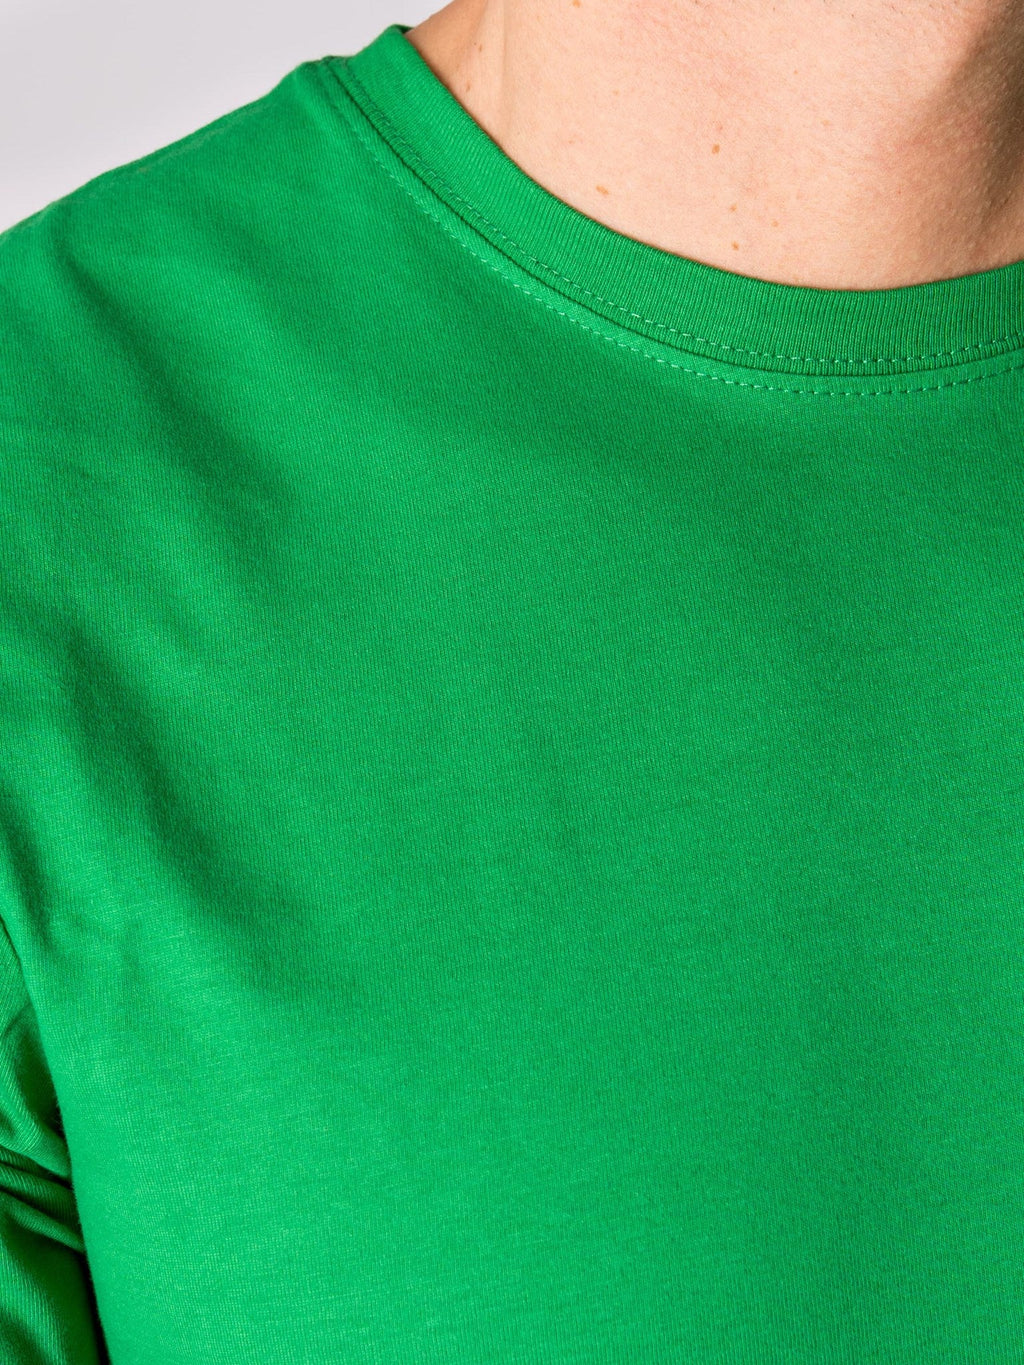 Biologisch Basic T -shirt - groen